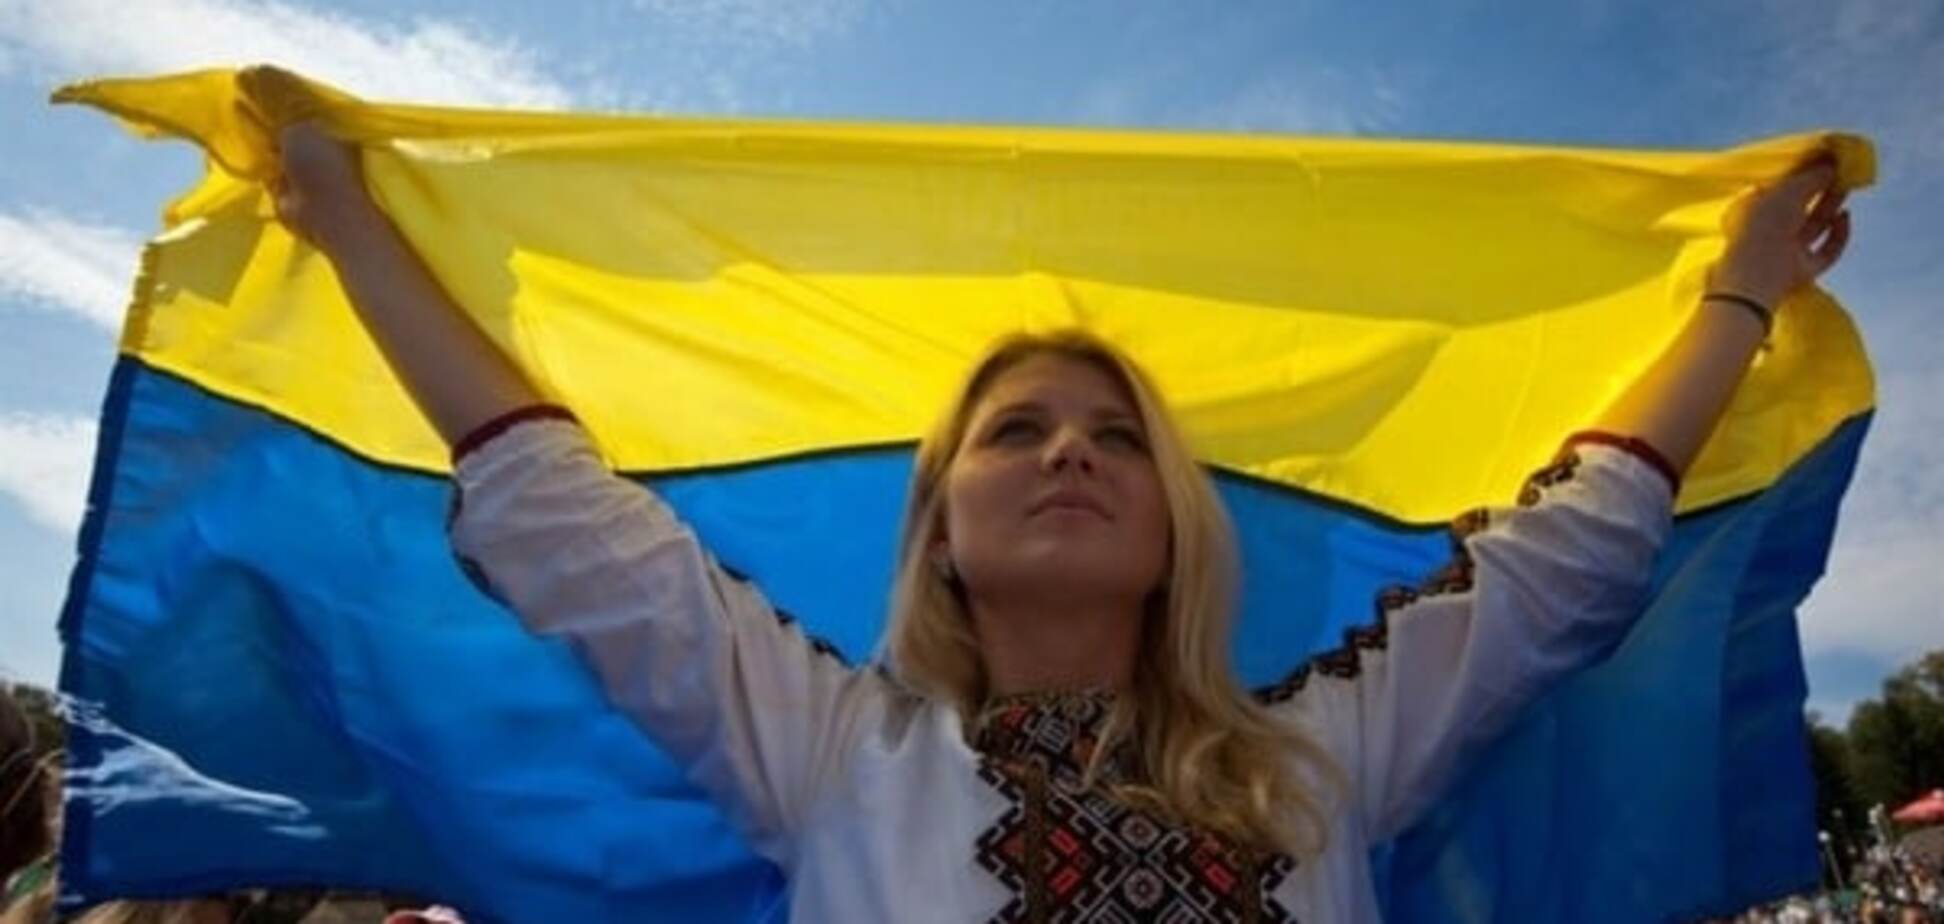 З розмахом! Порошенко запланував грандіозне святкування 25-ї річниці Незалежності України